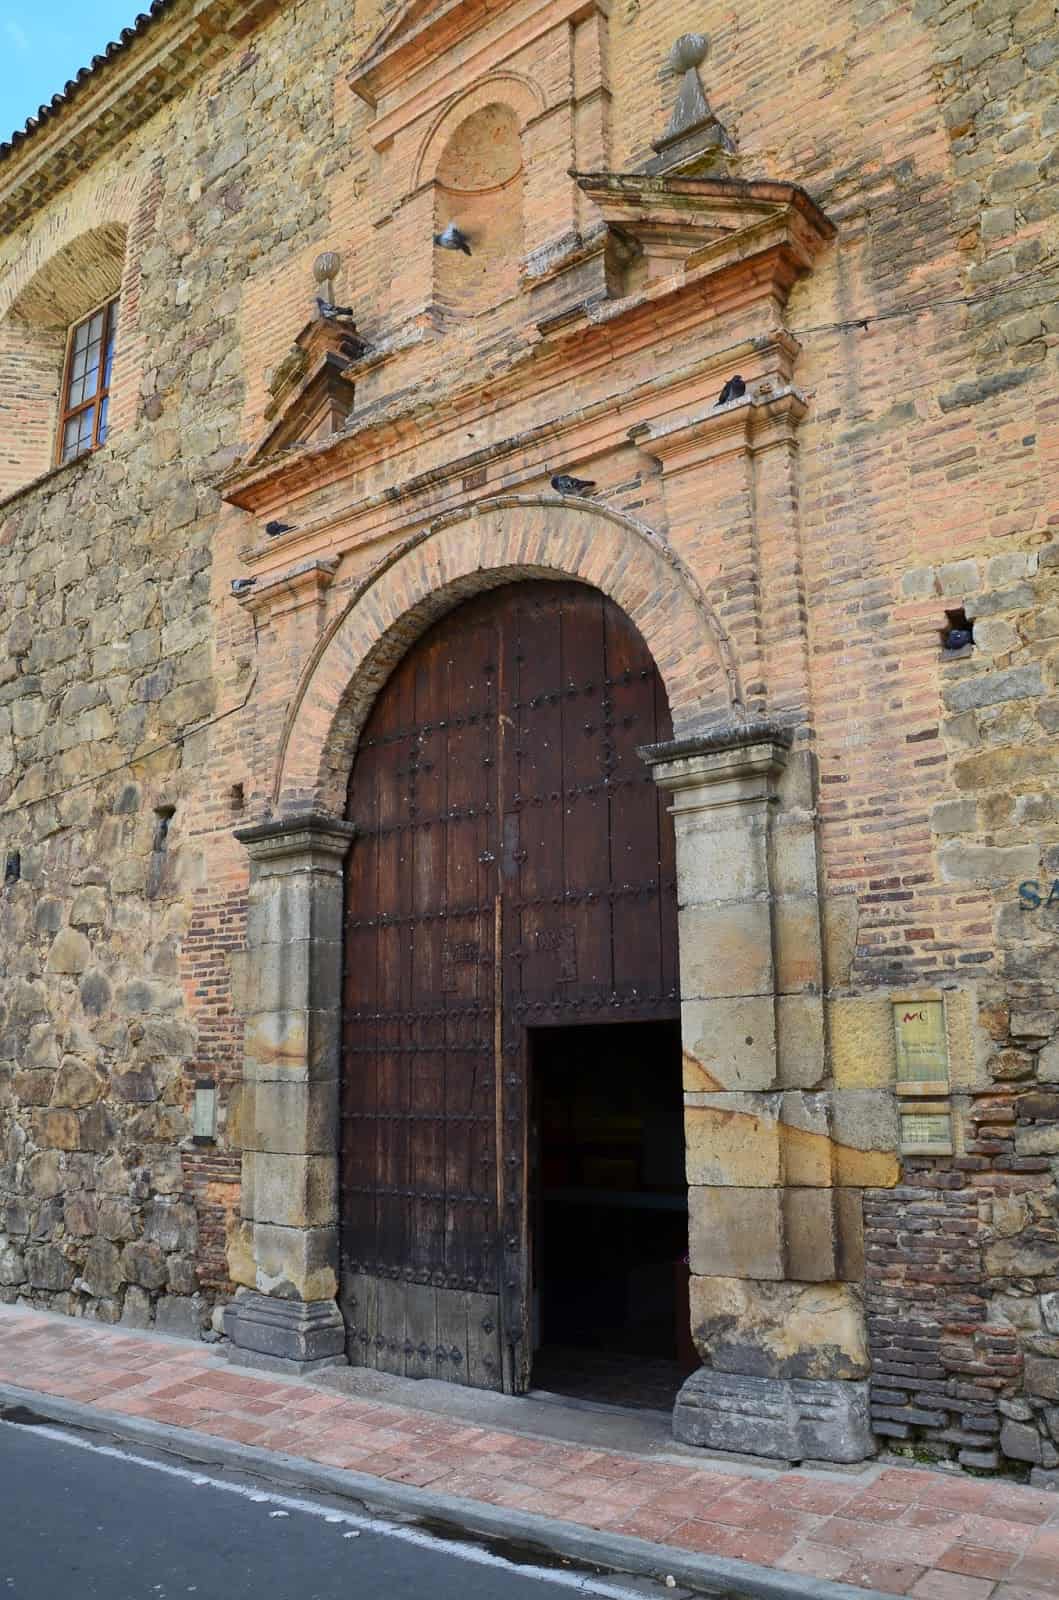 Entrance to the Santa Clara Museum in La Candelaria, Bogotá, Colombia